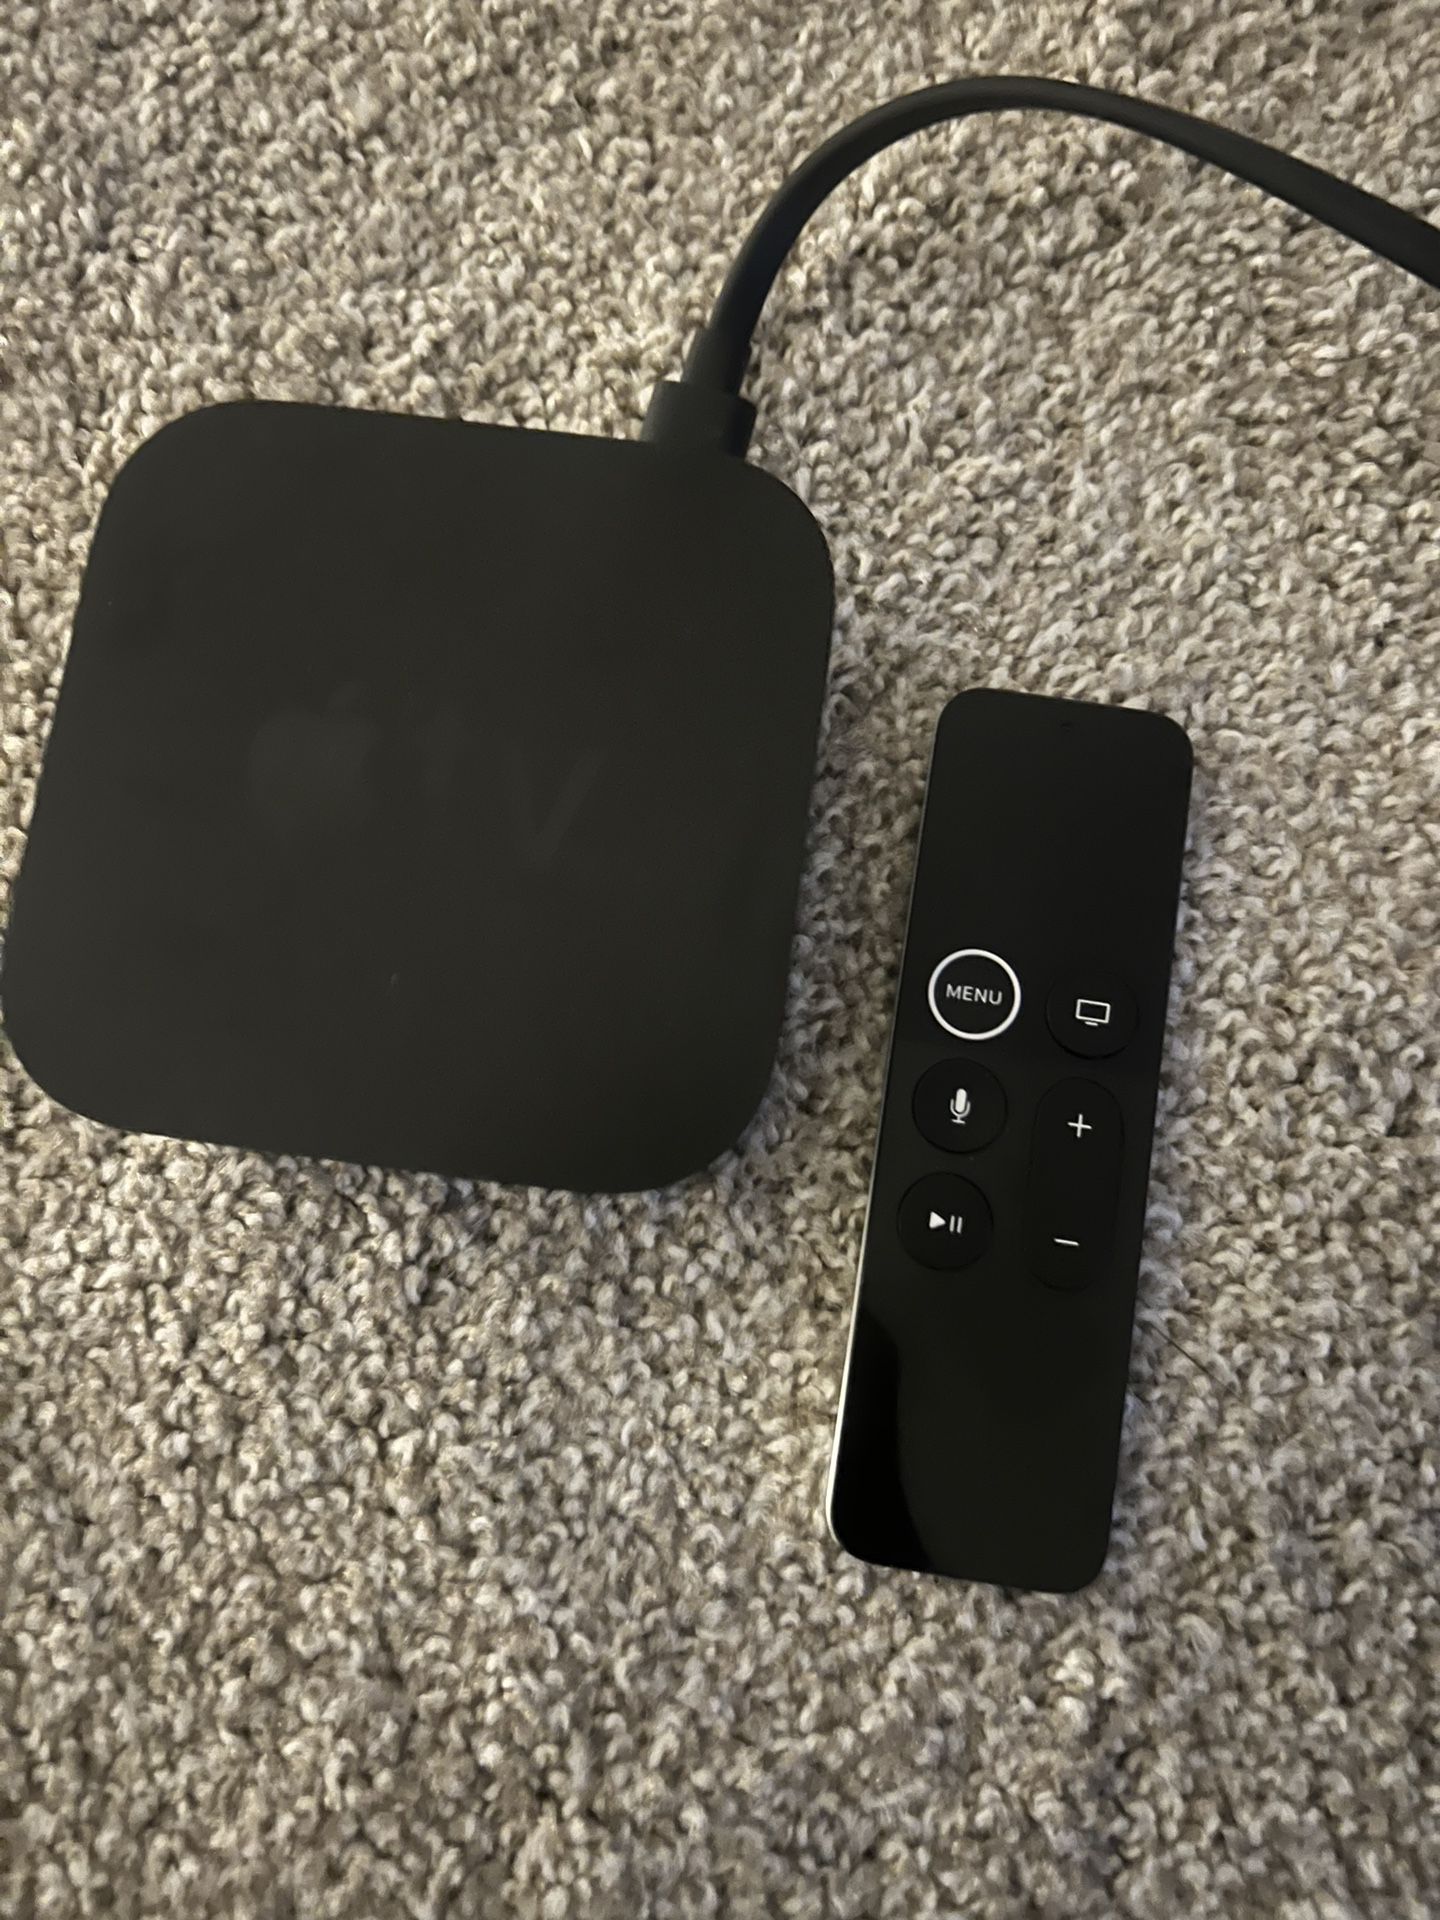 Apple TV Box w/ Remote 